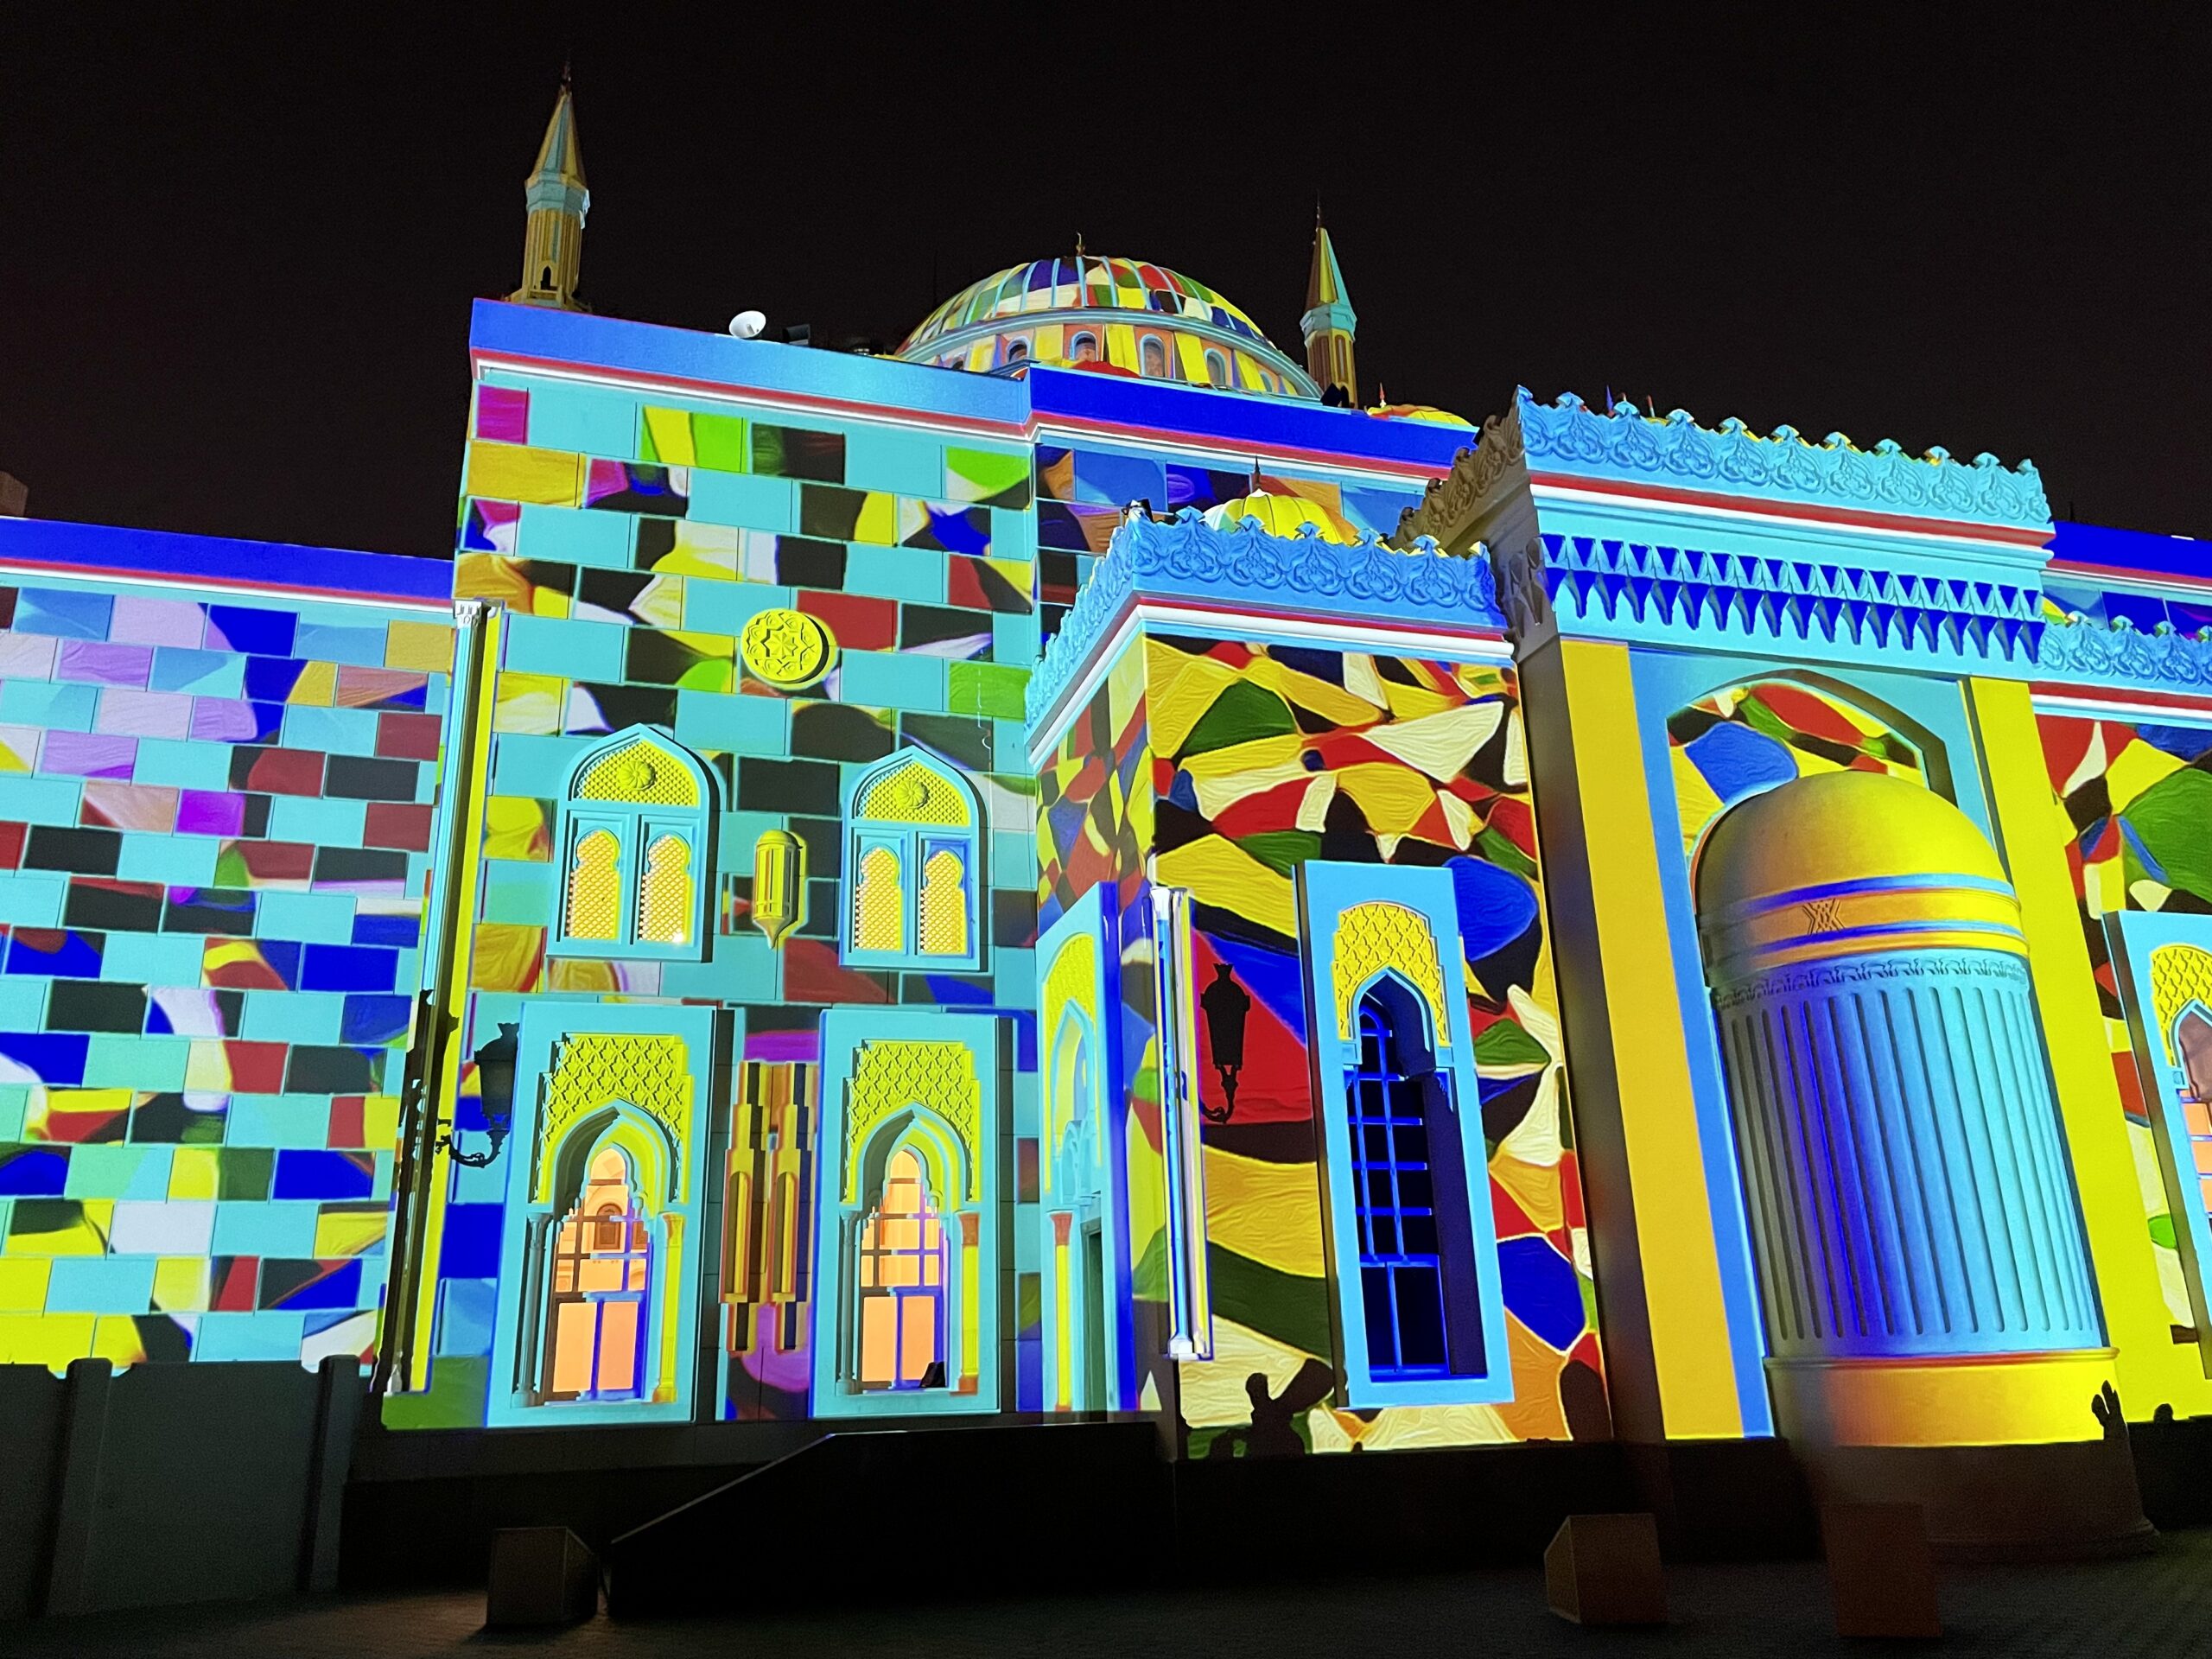 Iluminacja meczetu podczas Festiwalu Świateł w Sharjah